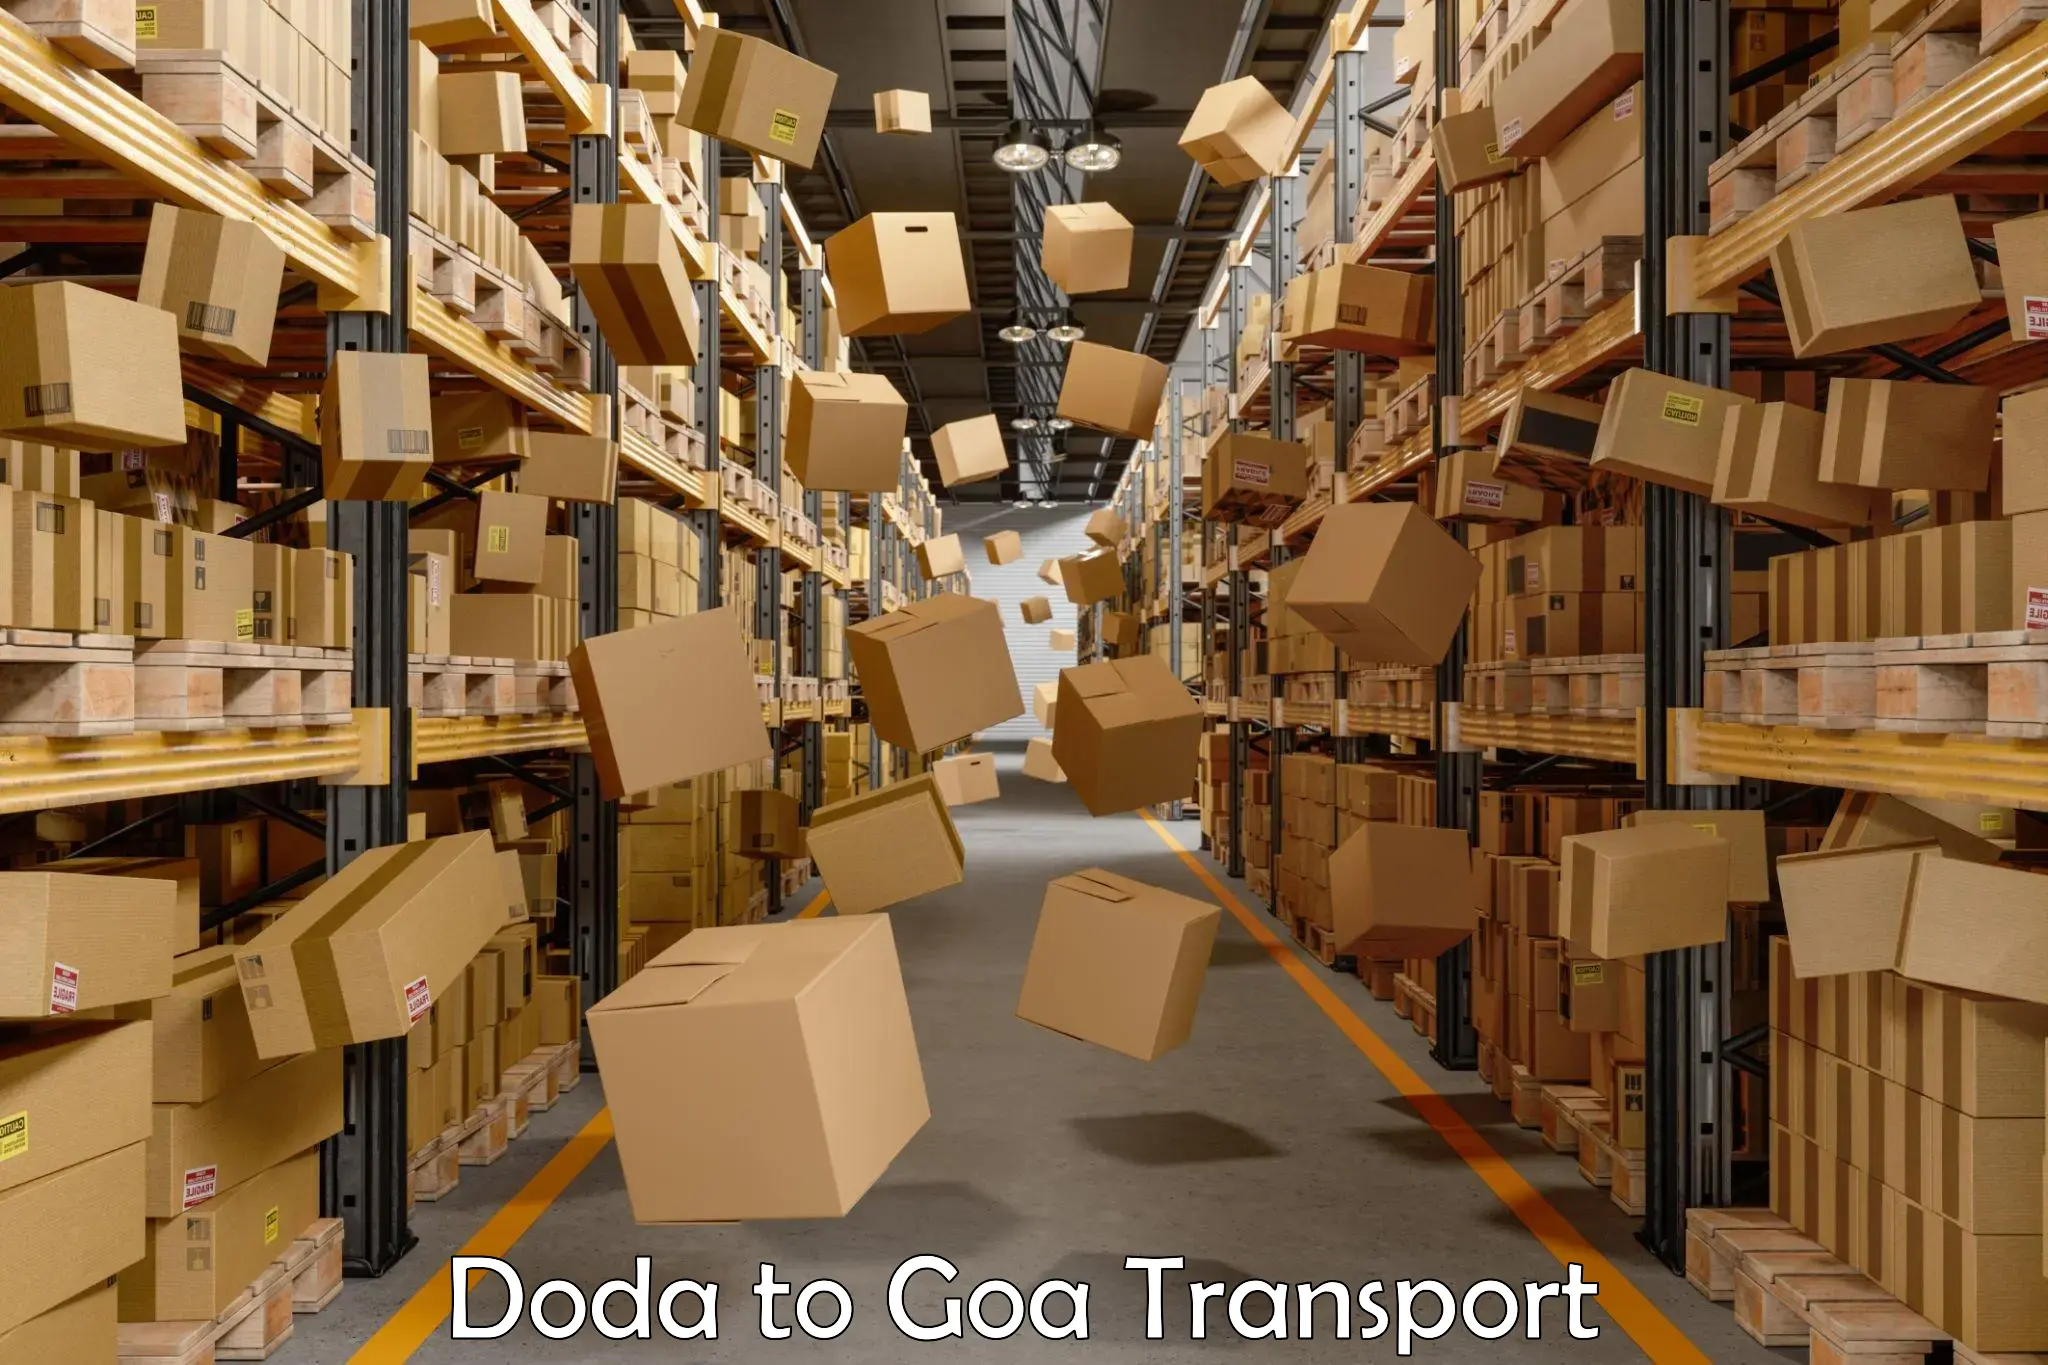 International cargo transportation services Doda to Mormugao Port